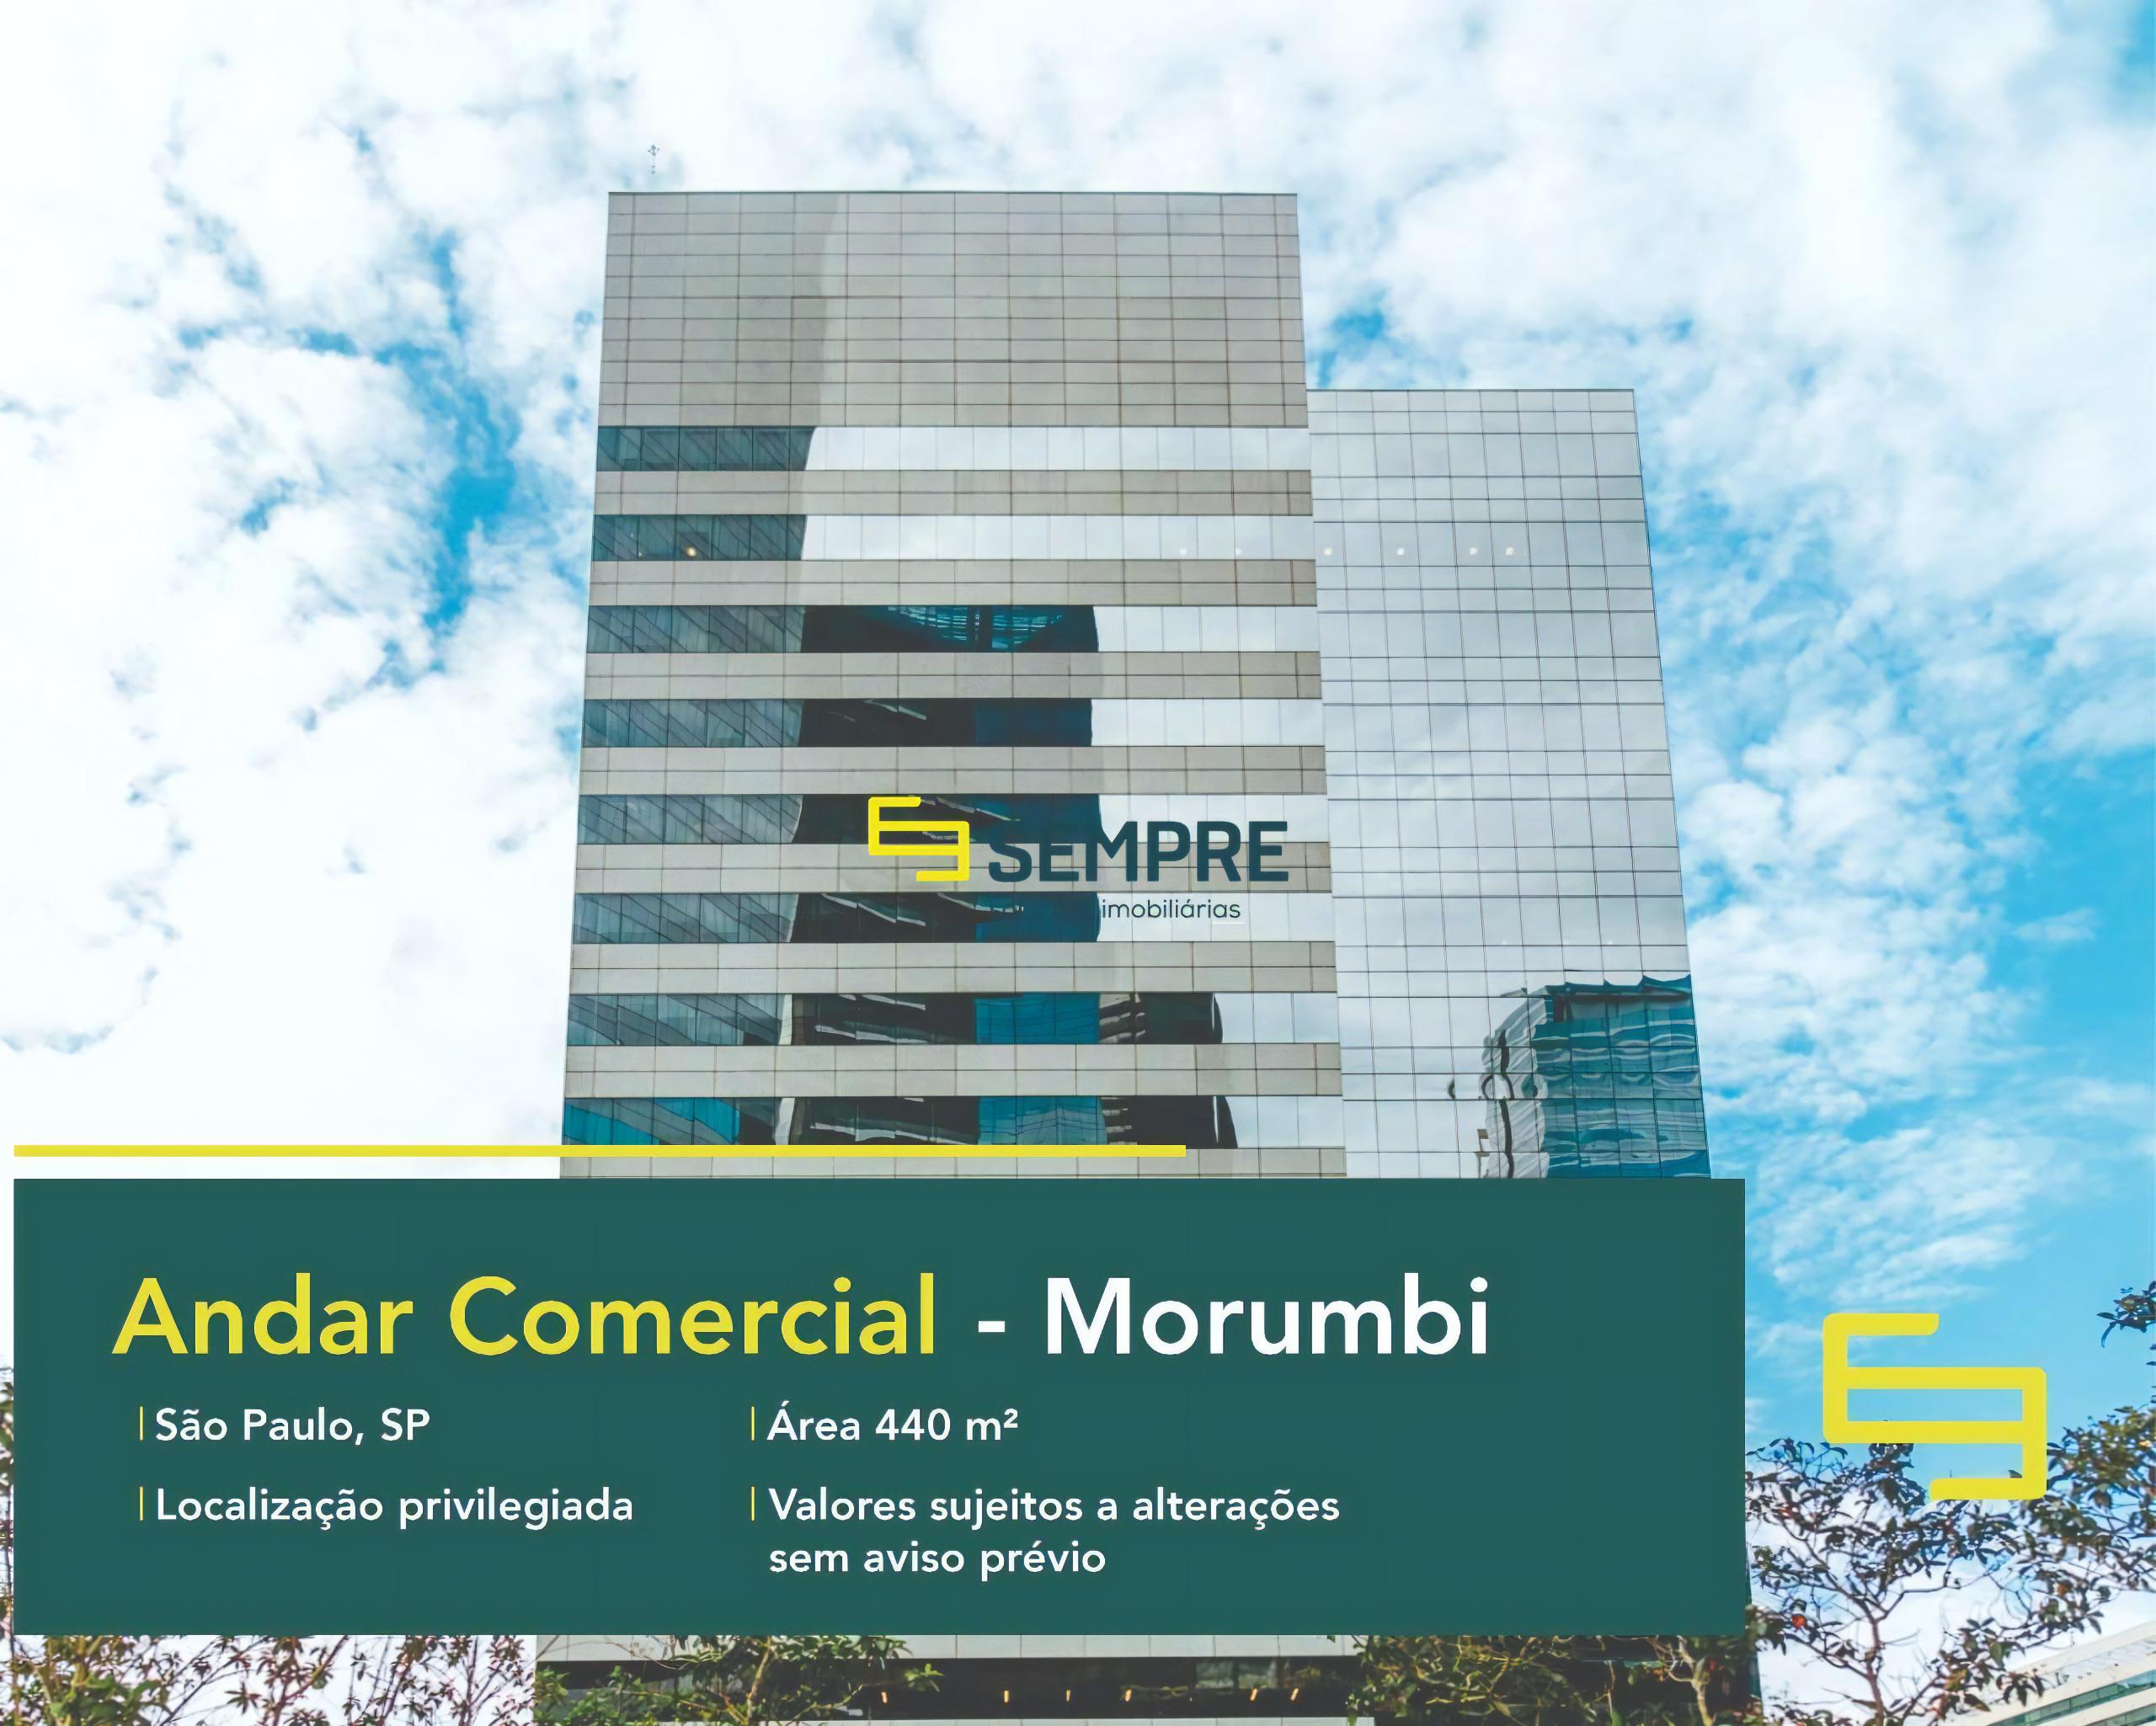 Laje corporativa no Morumbi para locação - São Paulo, em excelente localização. O estabelecimento comercial conta com área de 440 m².